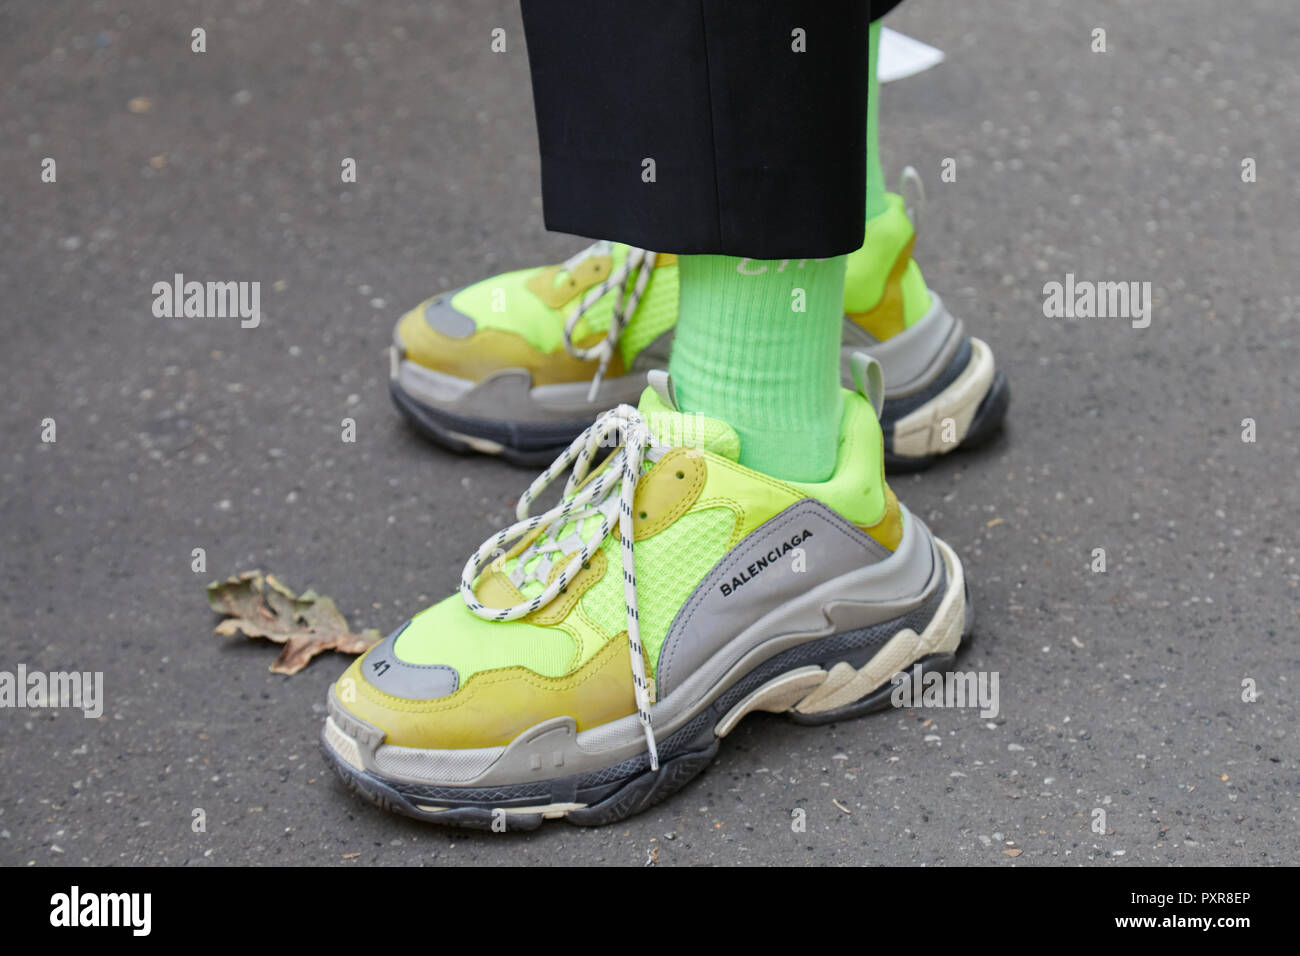 Zapatillas balenciaga fotografías e imágenes de alta resolución - Alamy